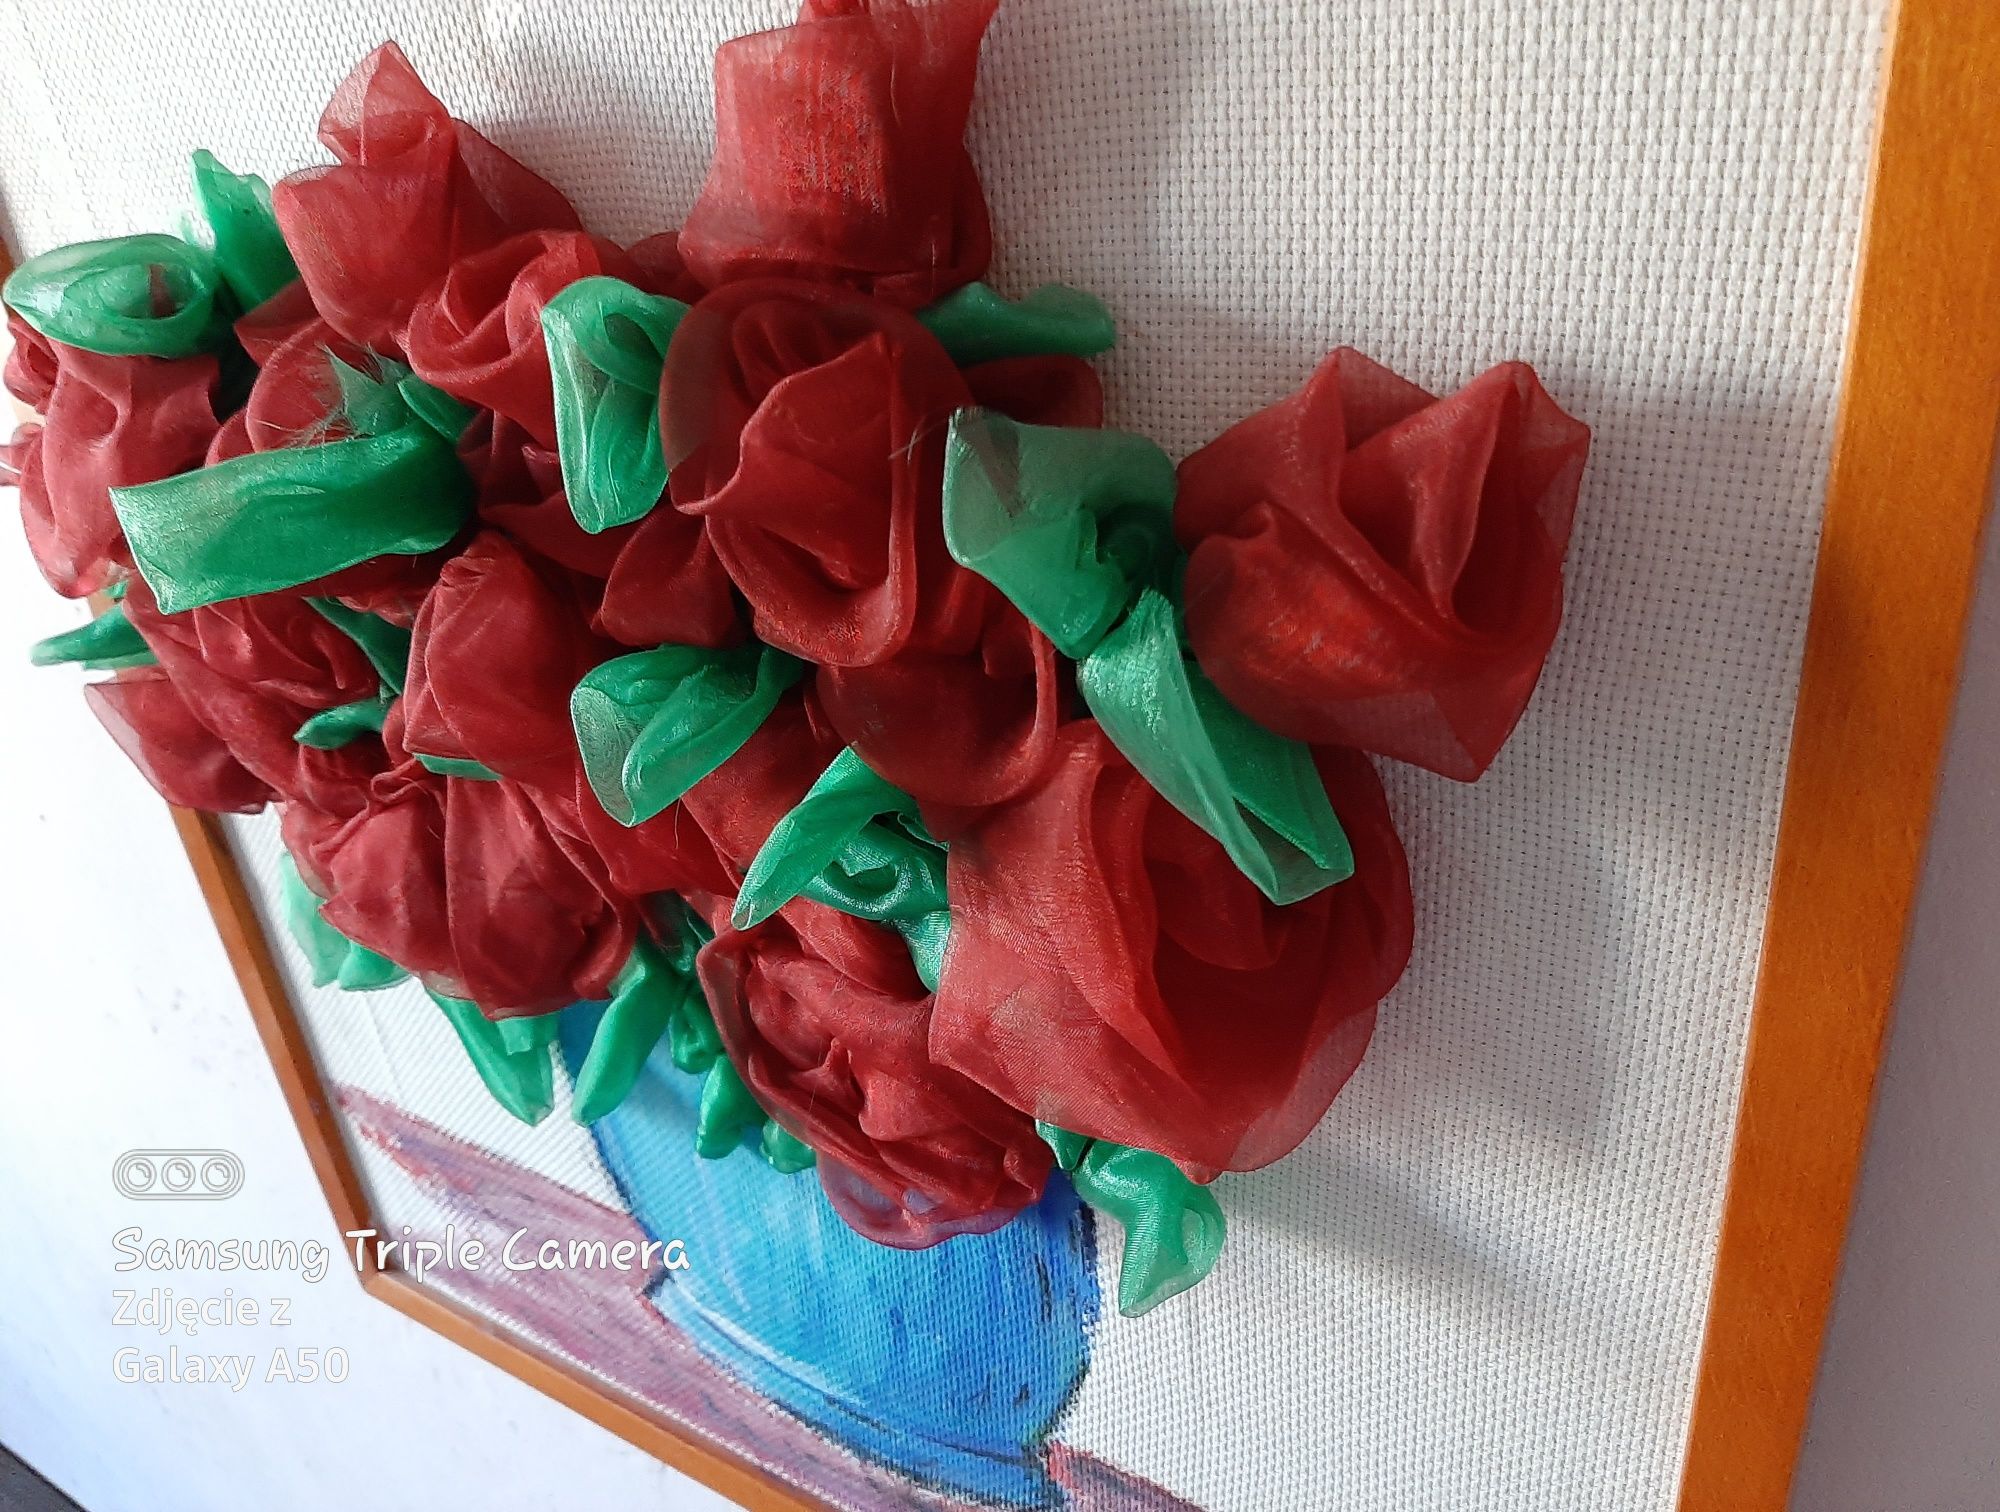 Obraz - Kwiaty w wazonie (3D)